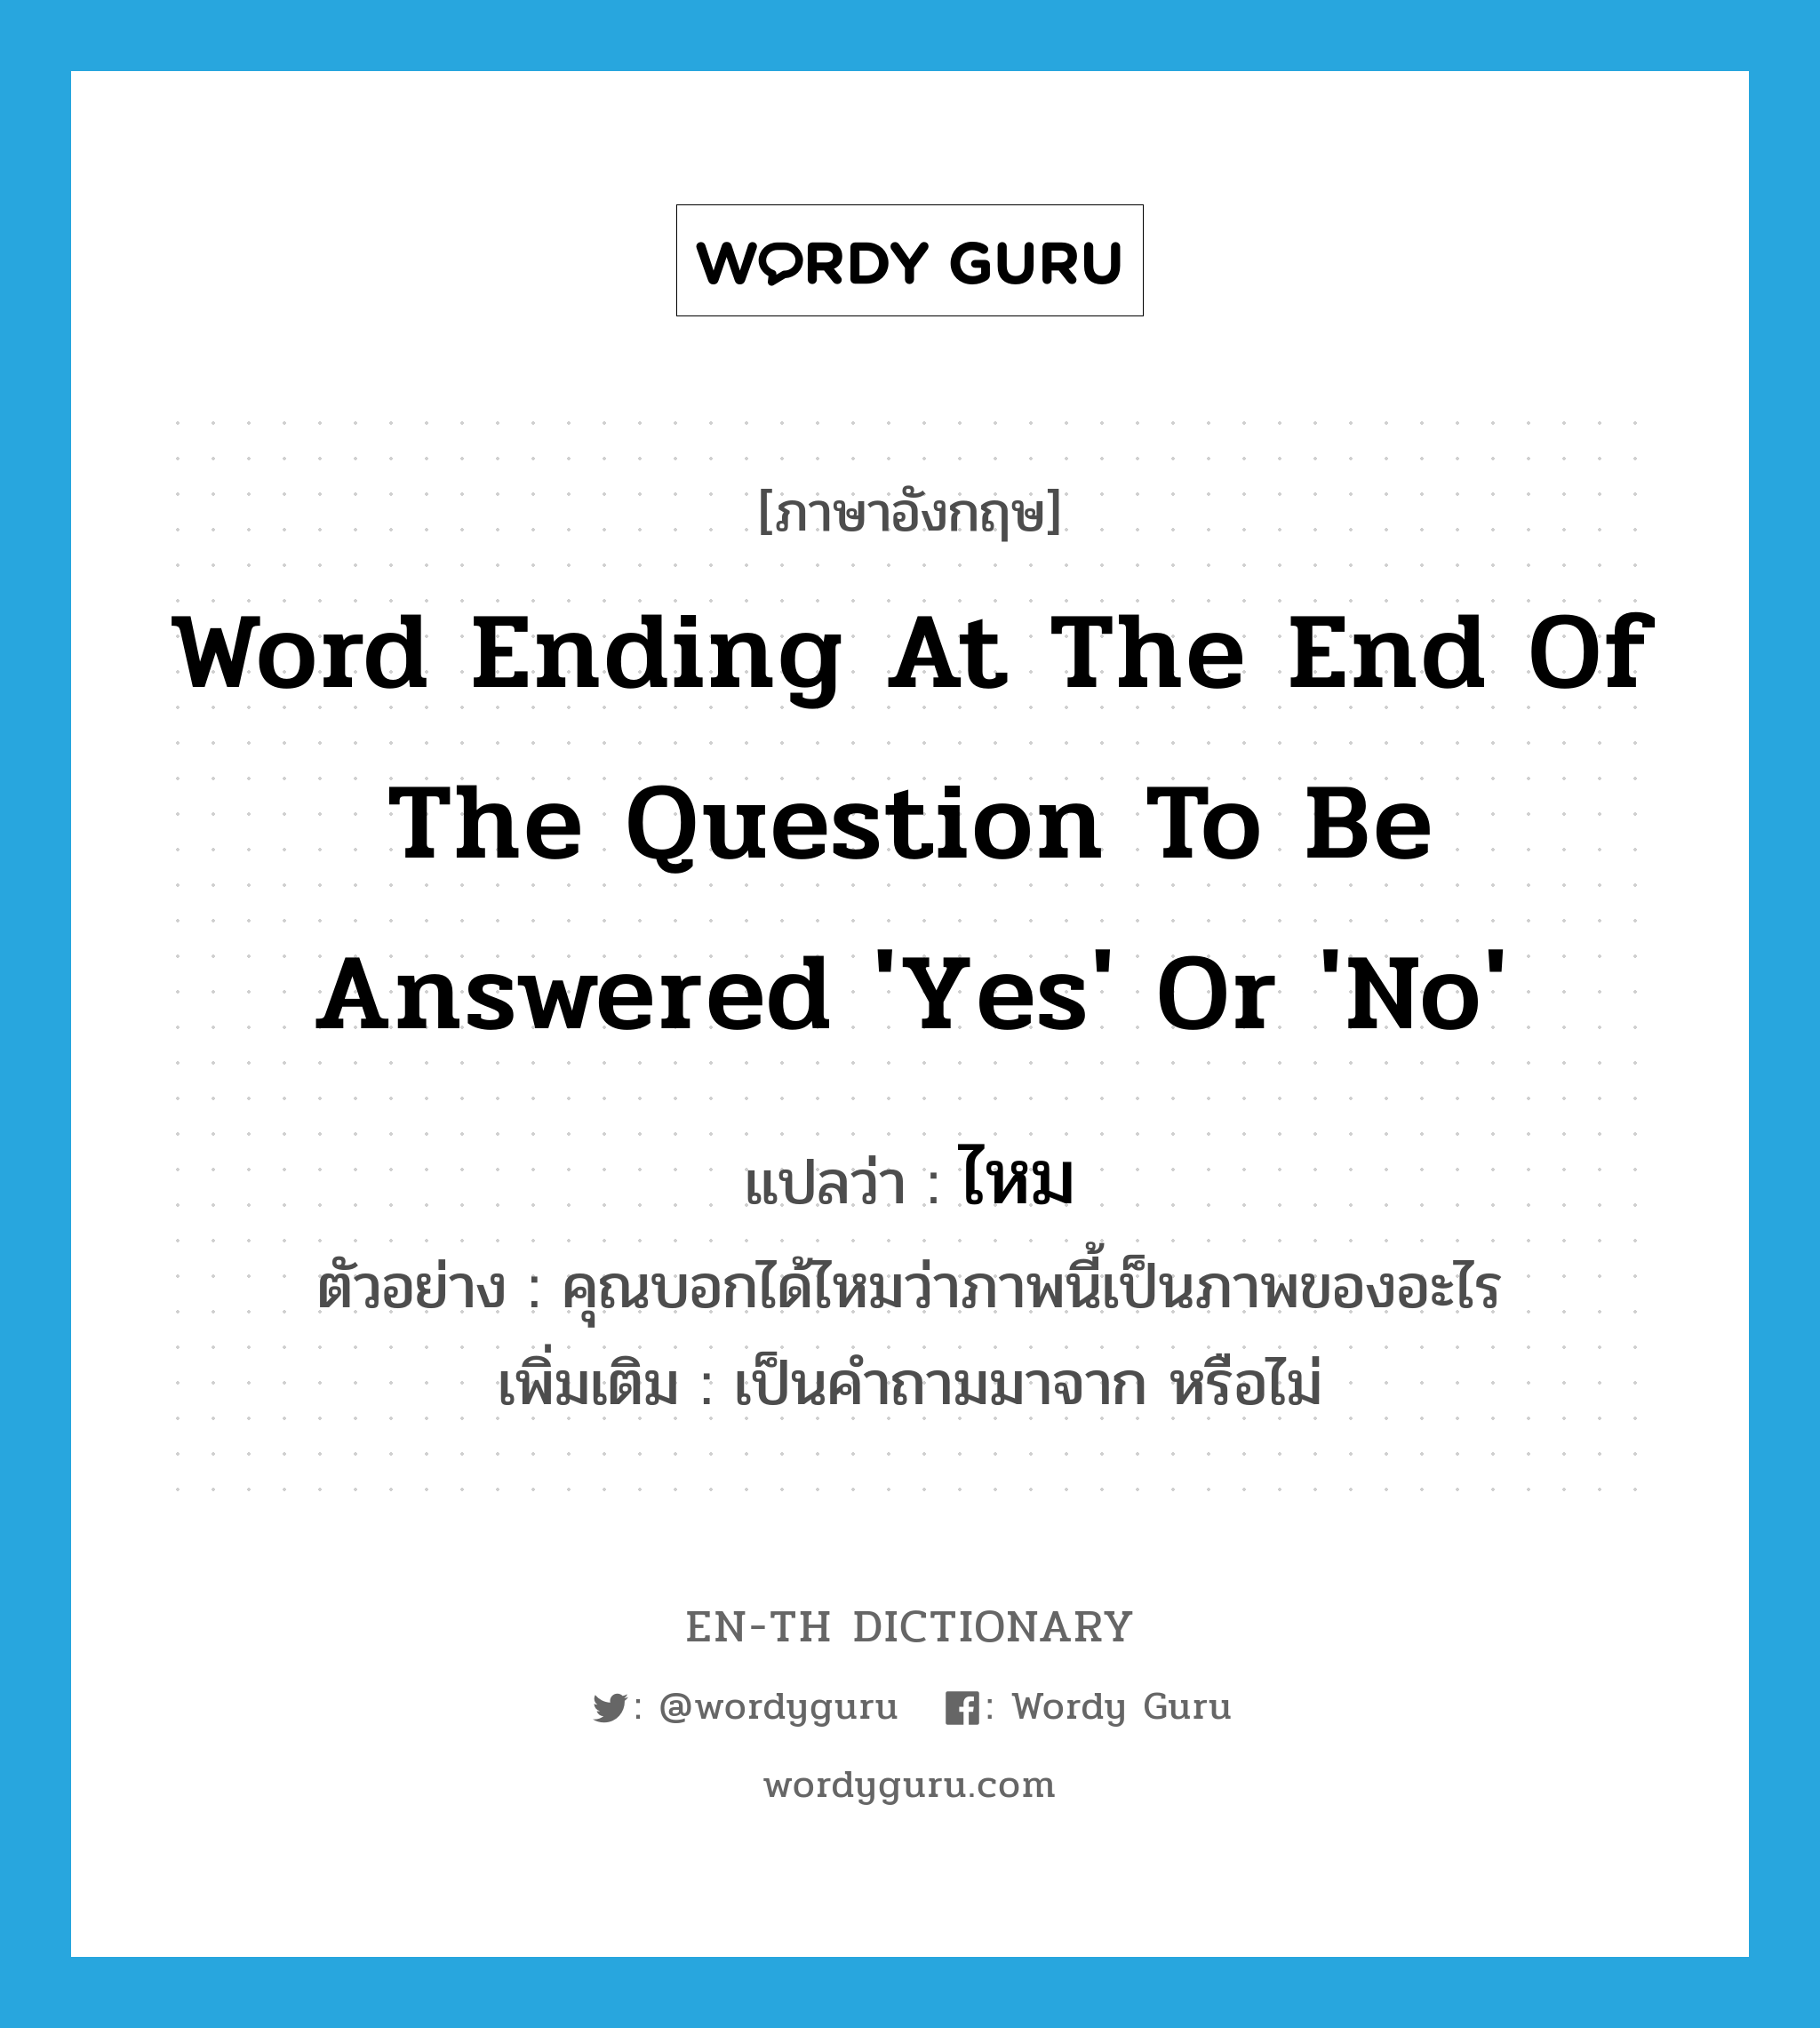 ไหม ภาษาอังกฤษ?, คำศัพท์ภาษาอังกฤษ ไหม แปลว่า word ending at the end of the question to be answered 'Yes' or 'No' ประเภท QUES ตัวอย่าง คุณบอกได้ไหมว่าภาพนี้เป็นภาพของอะไร เพิ่มเติม เป็นคำถามมาจาก หรือไม่ หมวด QUES